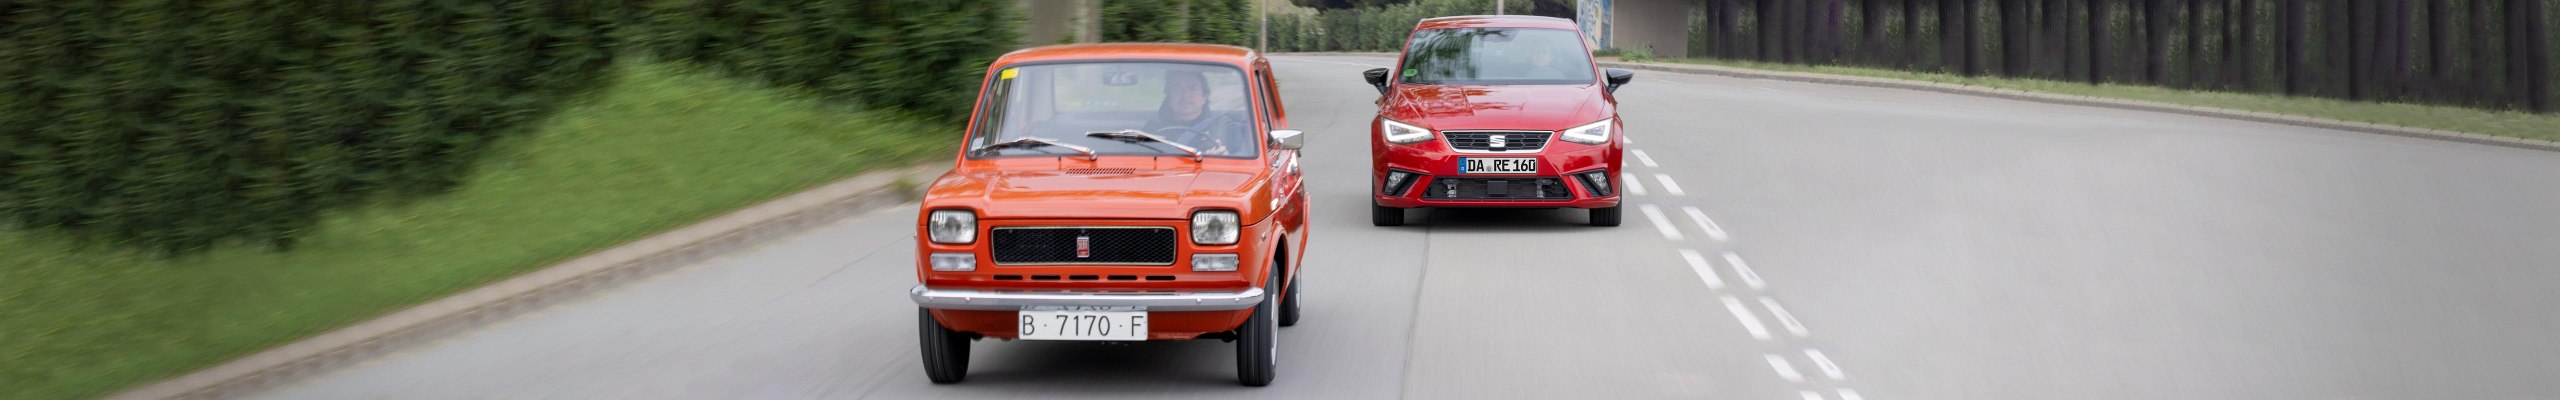 Vom SEAT 127 zum SEAT Ibiza: 50 Jahre Fahrzeuggeschichte und -entwicklung